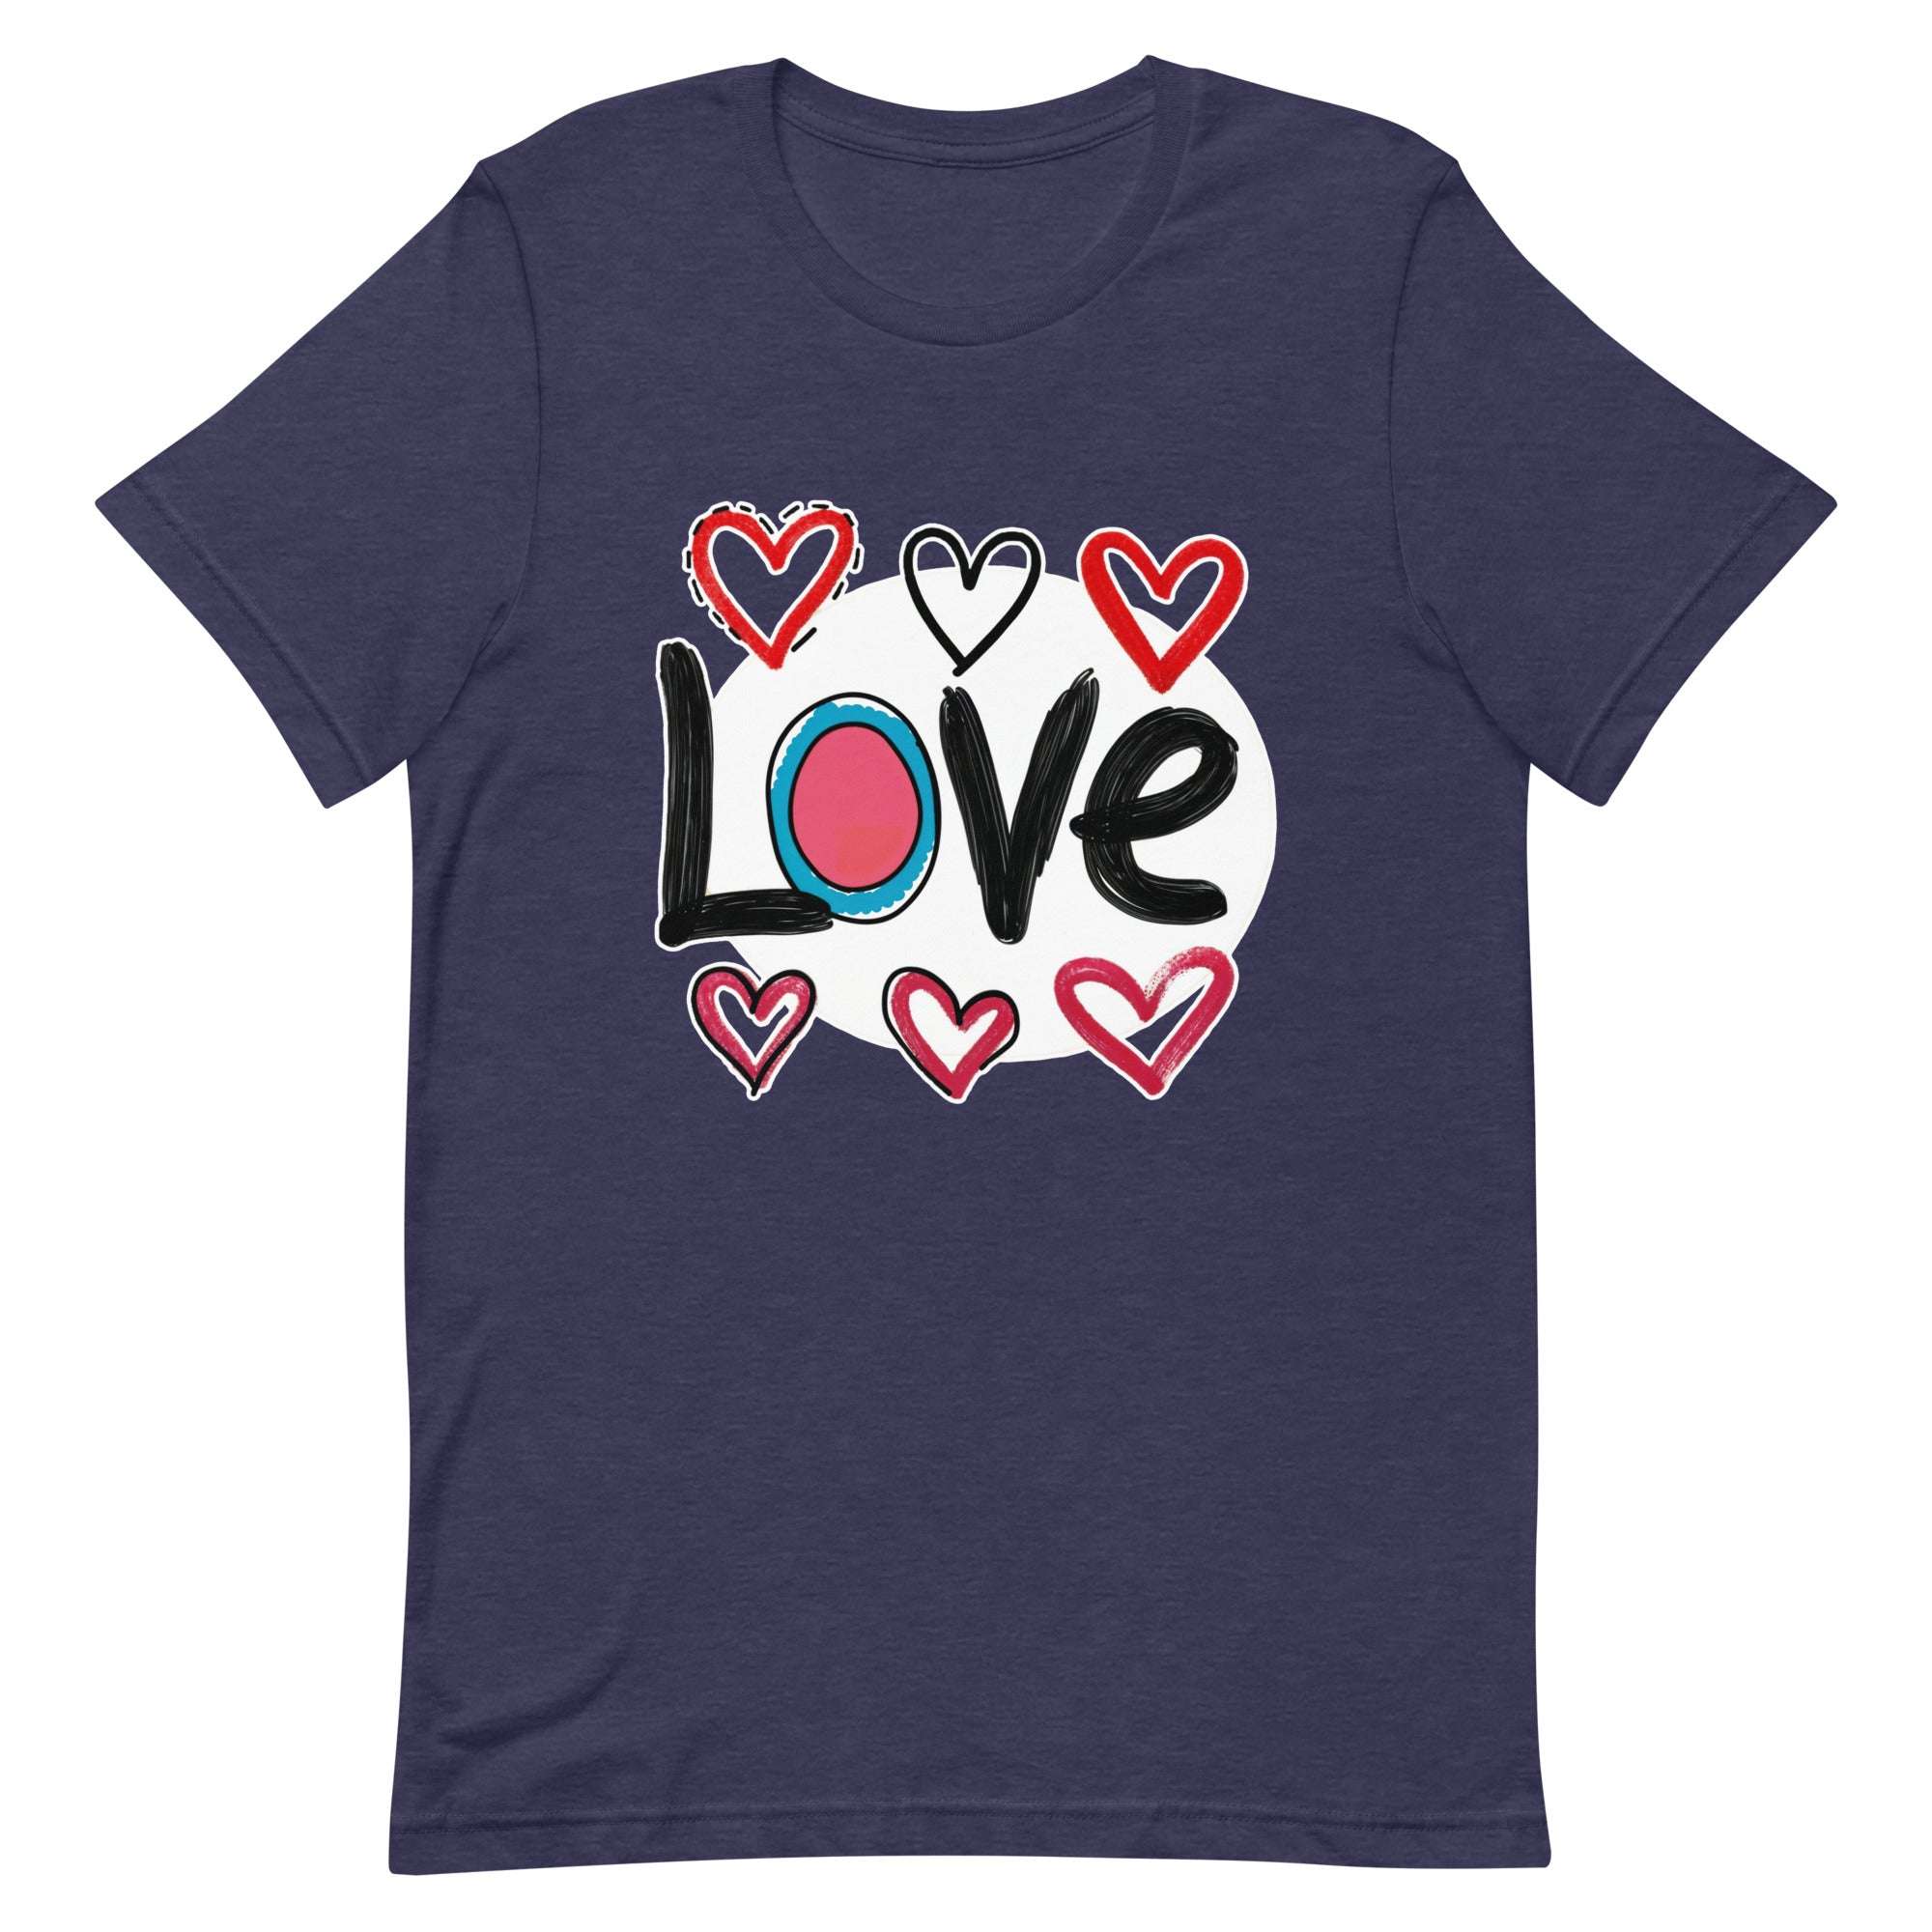 Pop-Art "Love." T-Shirt, Gift For Pop-Art Lovers Heather Midnight Navy S M XL L DenBox